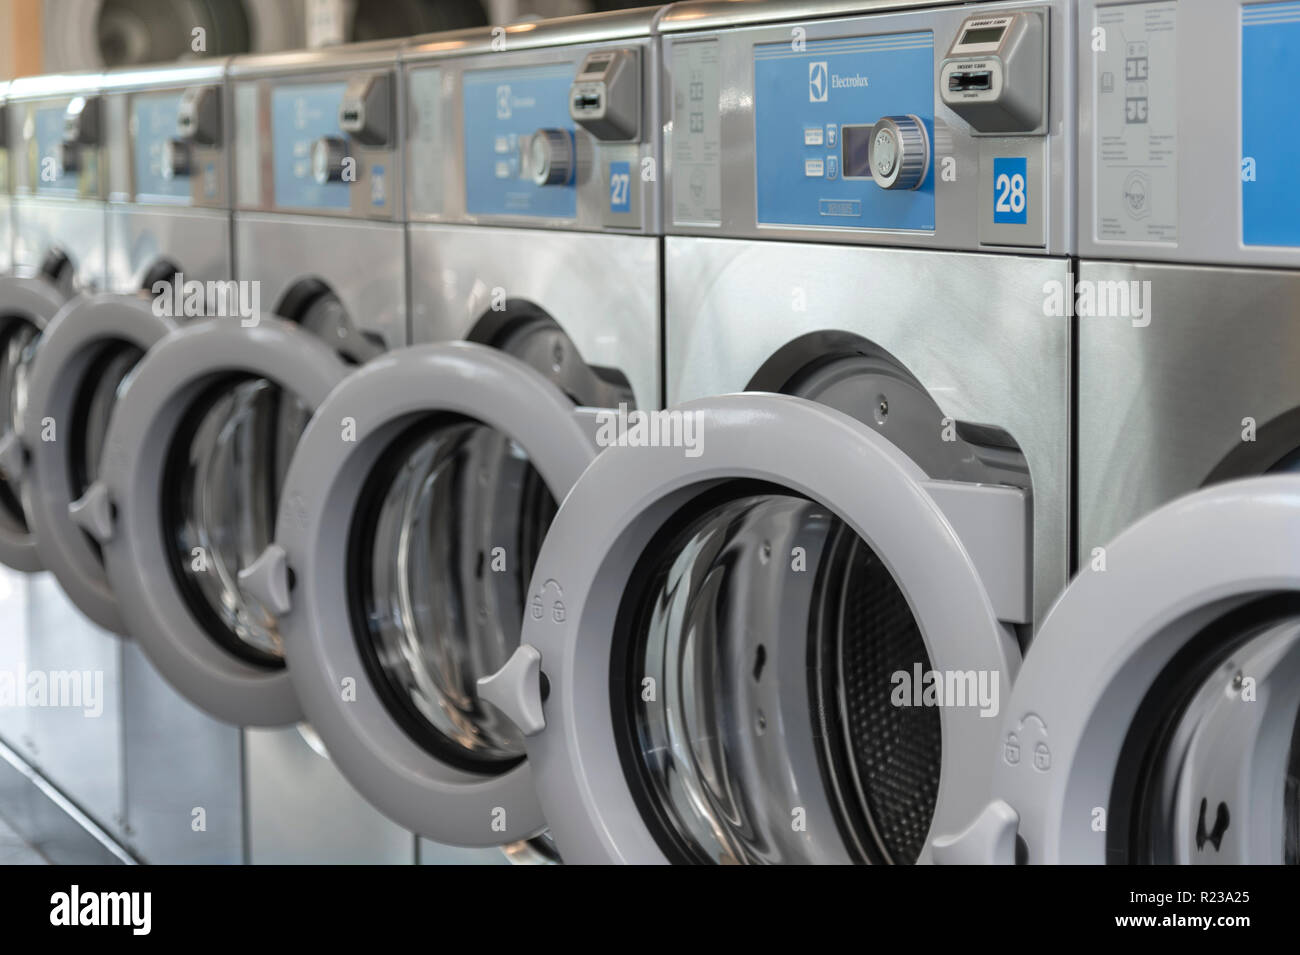 Laundromat Machines, USA Stock Photo